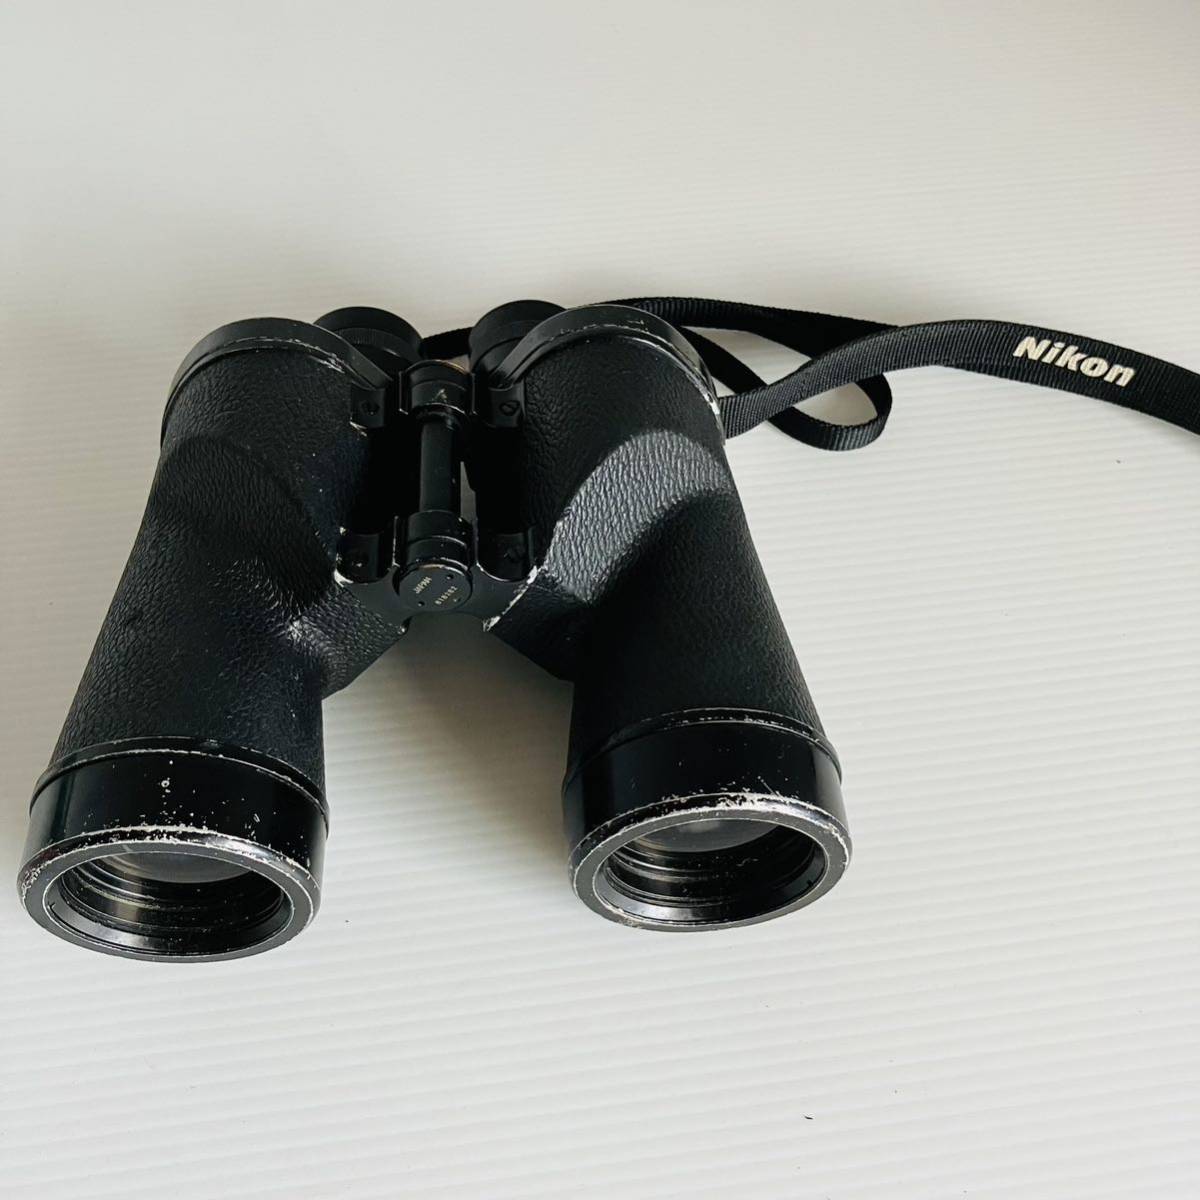 日本光学 ニコン 双眼鏡 7×50 7.3° coated Nikon